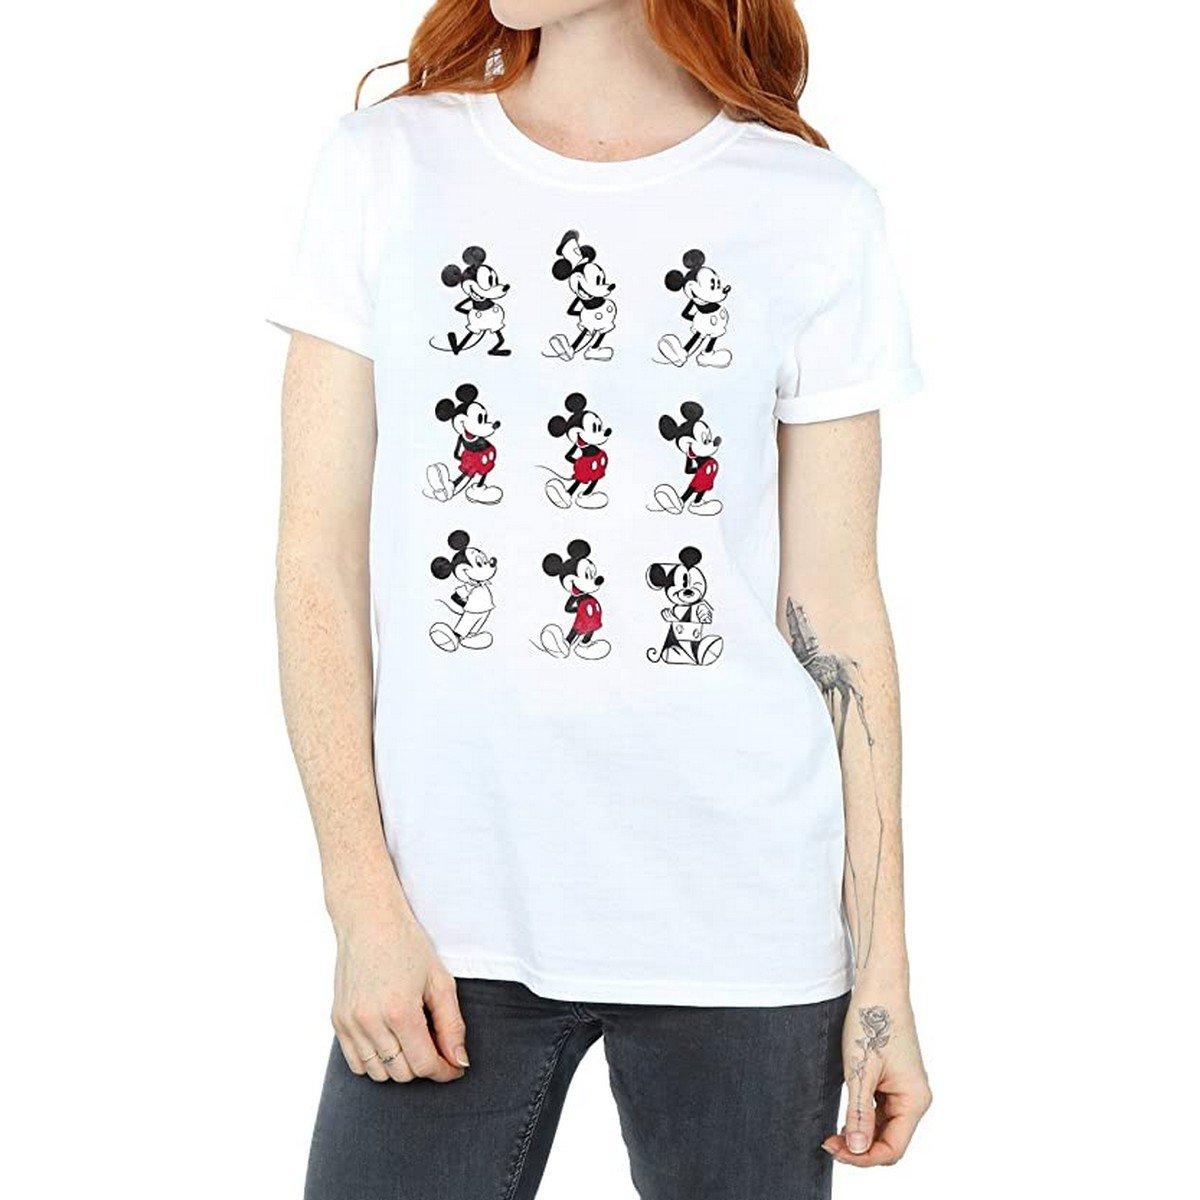 Tshirt Damen Weiss XL von Disney